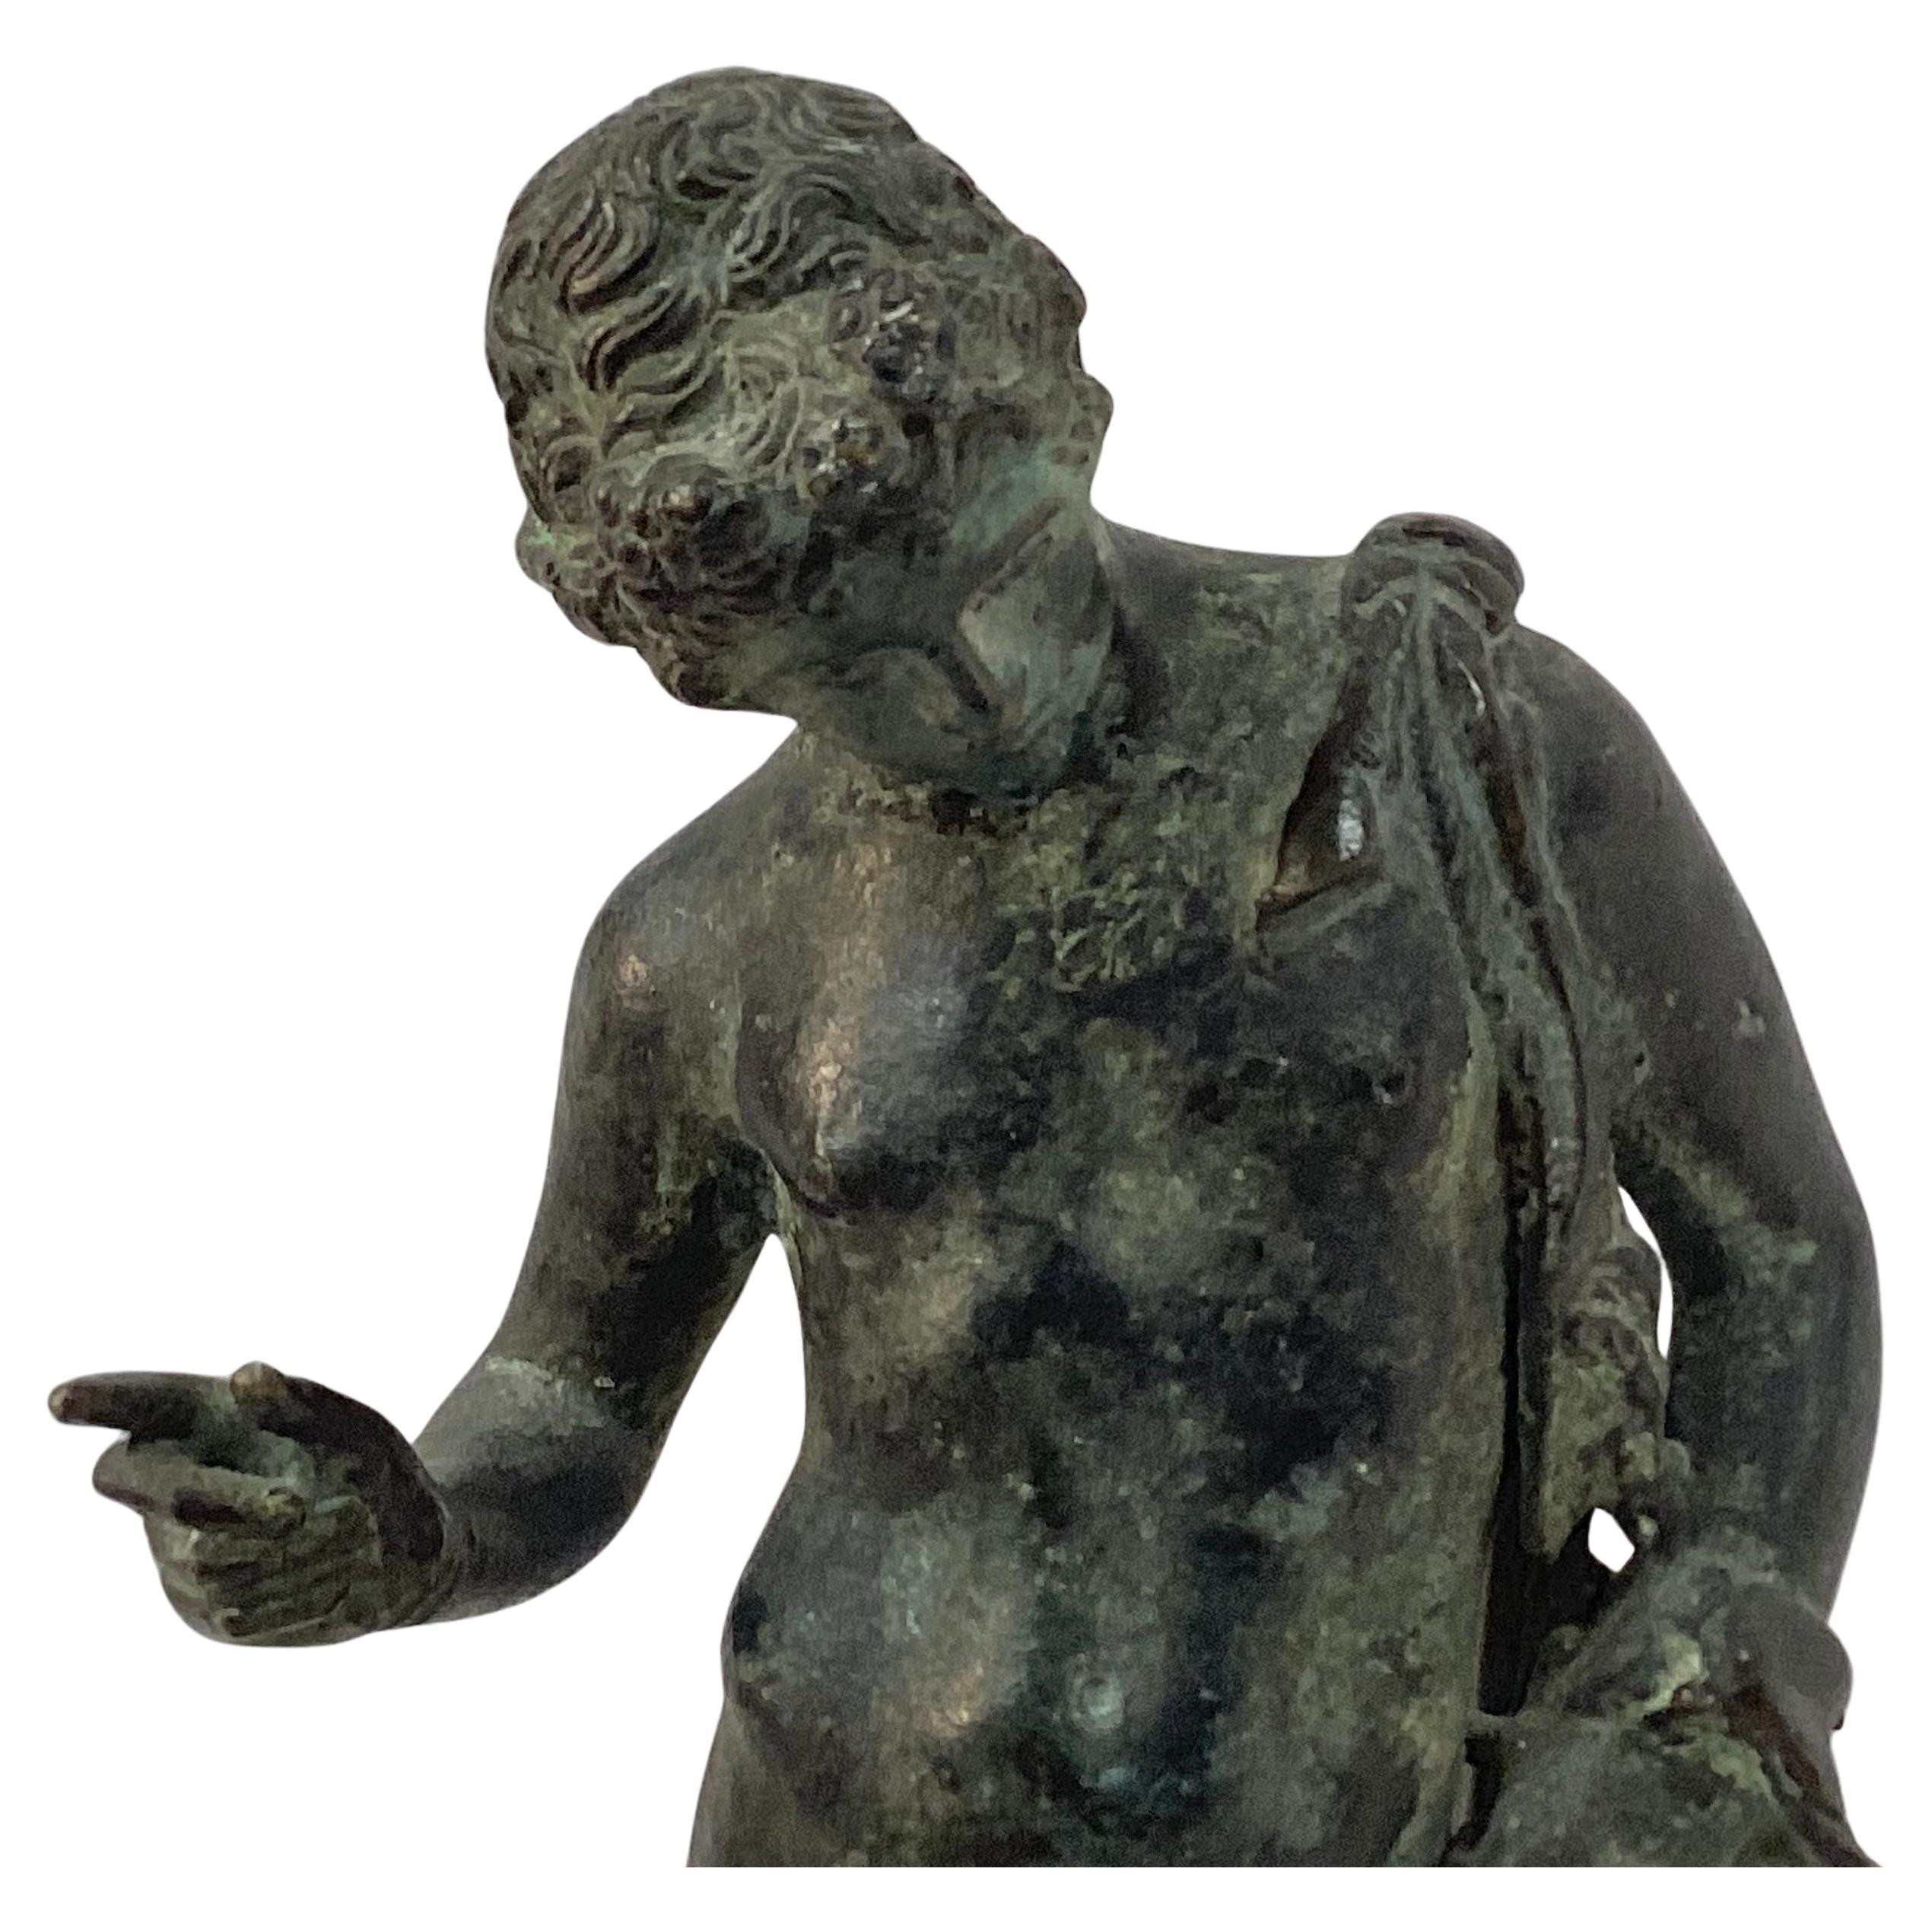 Sculpture de Narcisse en bronze classique italien à patine vert-de-gris, probablement de Chiurazzi, ou d'une fonderie similaire, Naples, vers 1900.

Narcisse est représenté nu, à l'exception d'une paire de sandales, debout sur un socle circulaire,